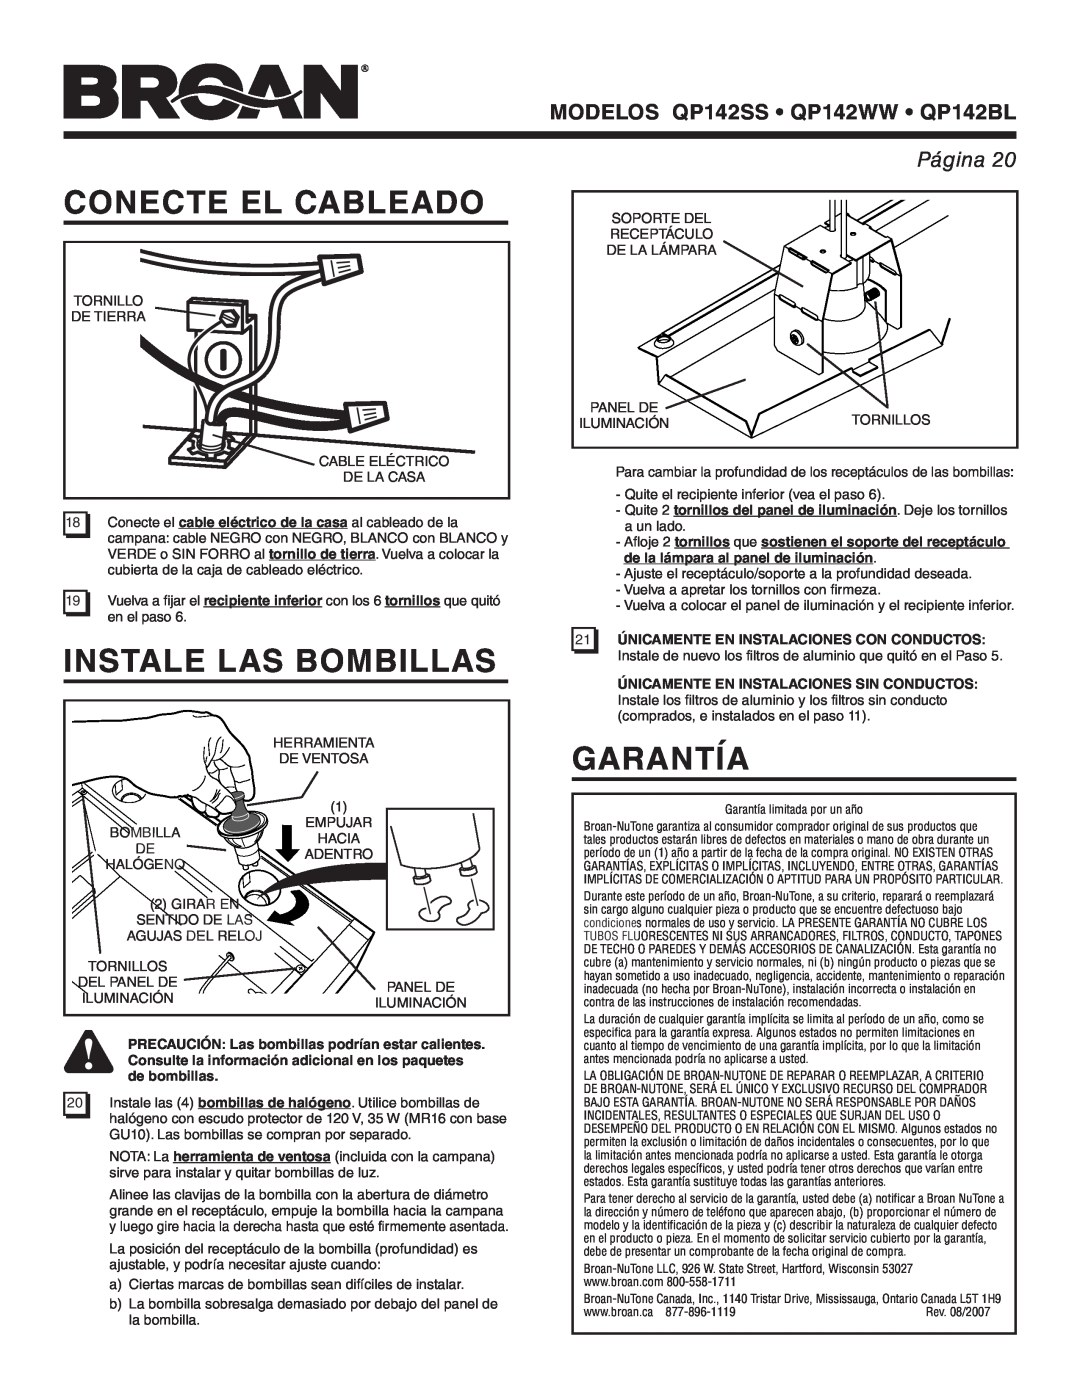 Broan manual Conecte El Cableado, Instale Las Bombillas, Garantía, MODELOS QP142SS QP142WW QP142BL, Página 